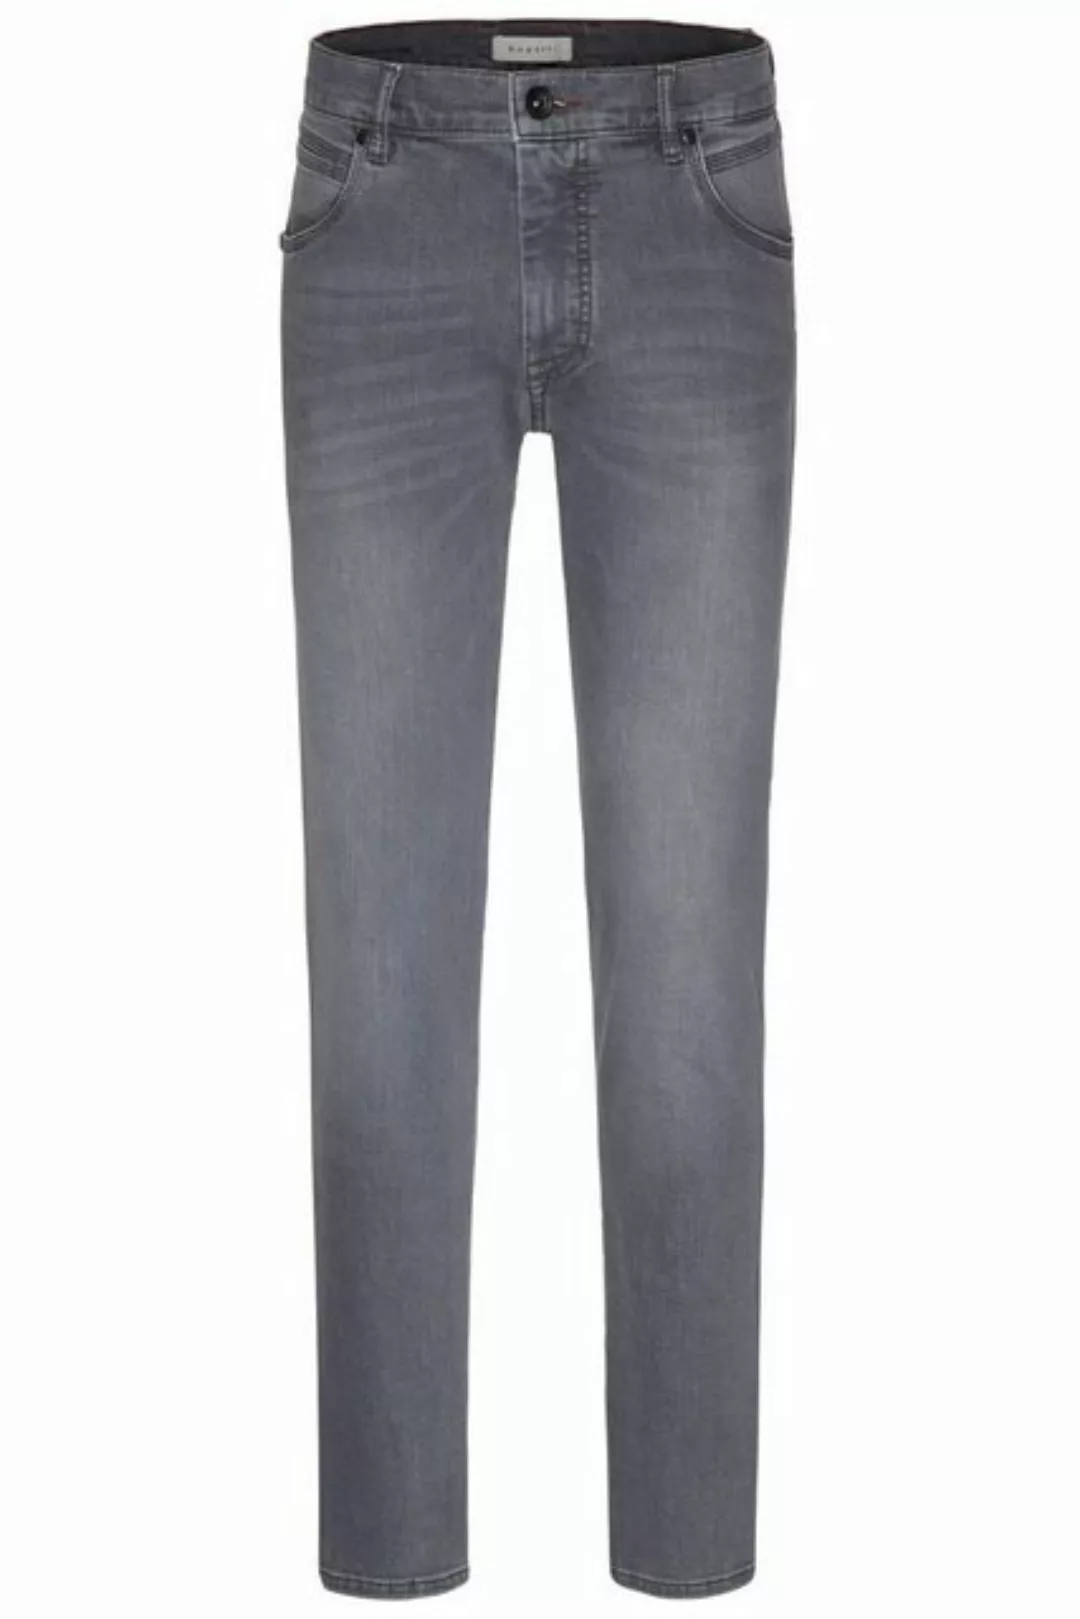 bugatti Jeans 3038D/86676/251 günstig online kaufen